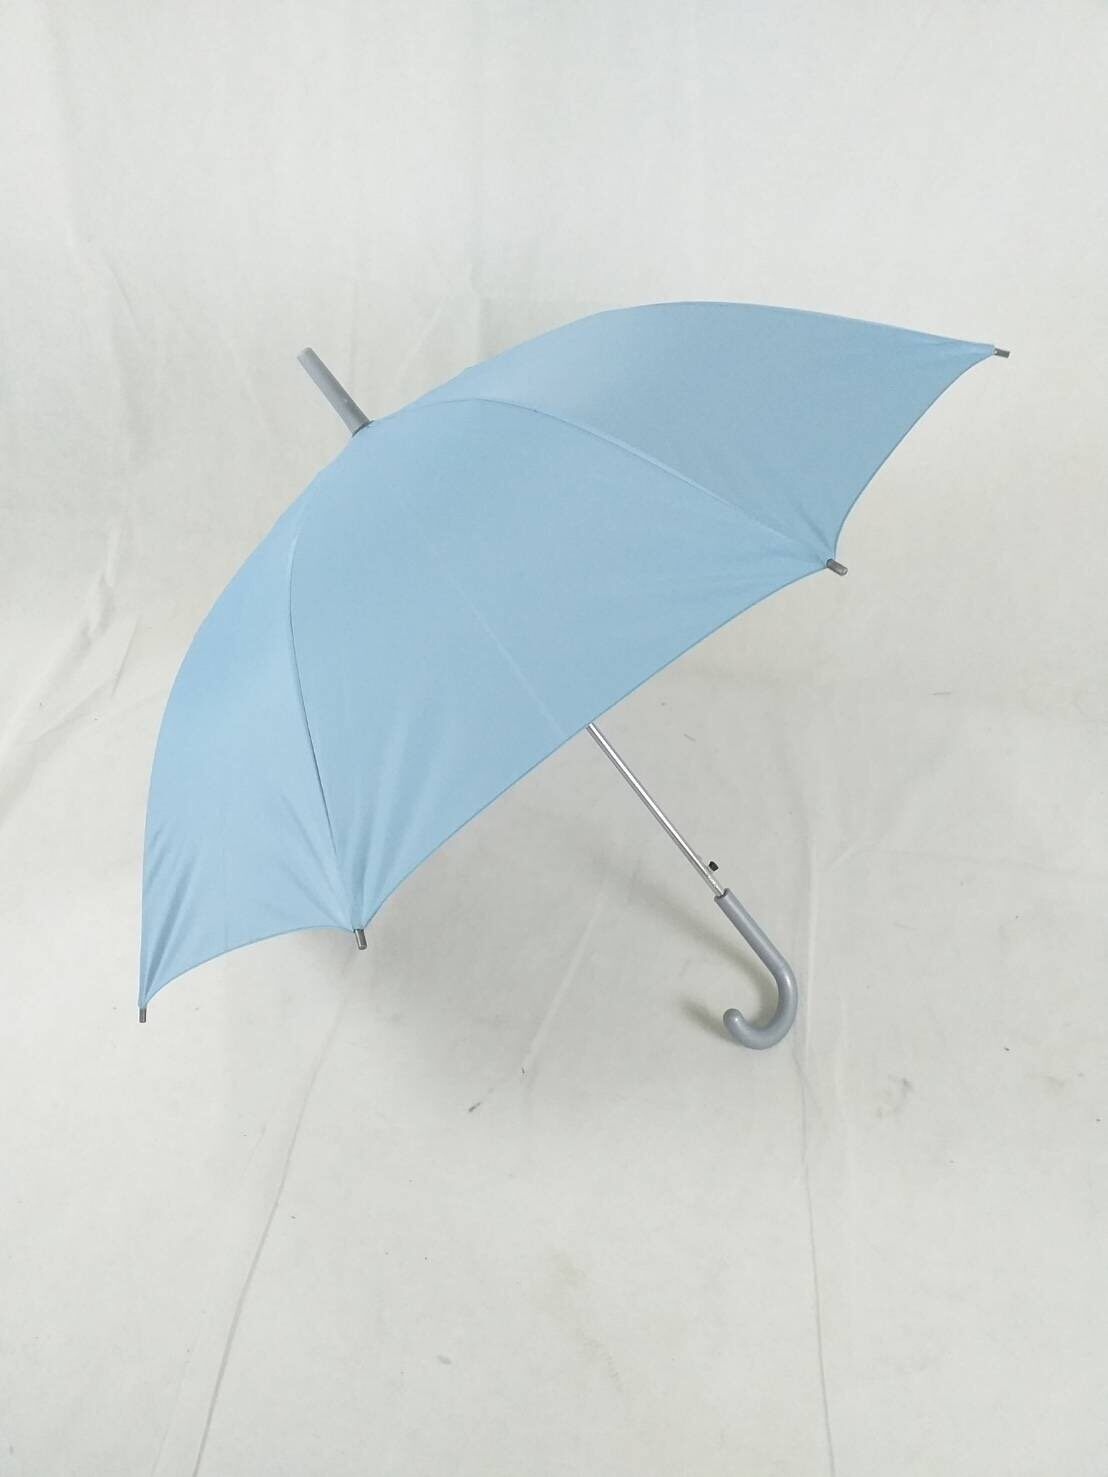 ร่มสปริง 22นิ้ว ร่มยาว ผ้าUV สีพื้น กันแดด ทนฝน ร่มกันแดด สีสันสดใส ผลิตในไทย umbrella  รหัส 2201